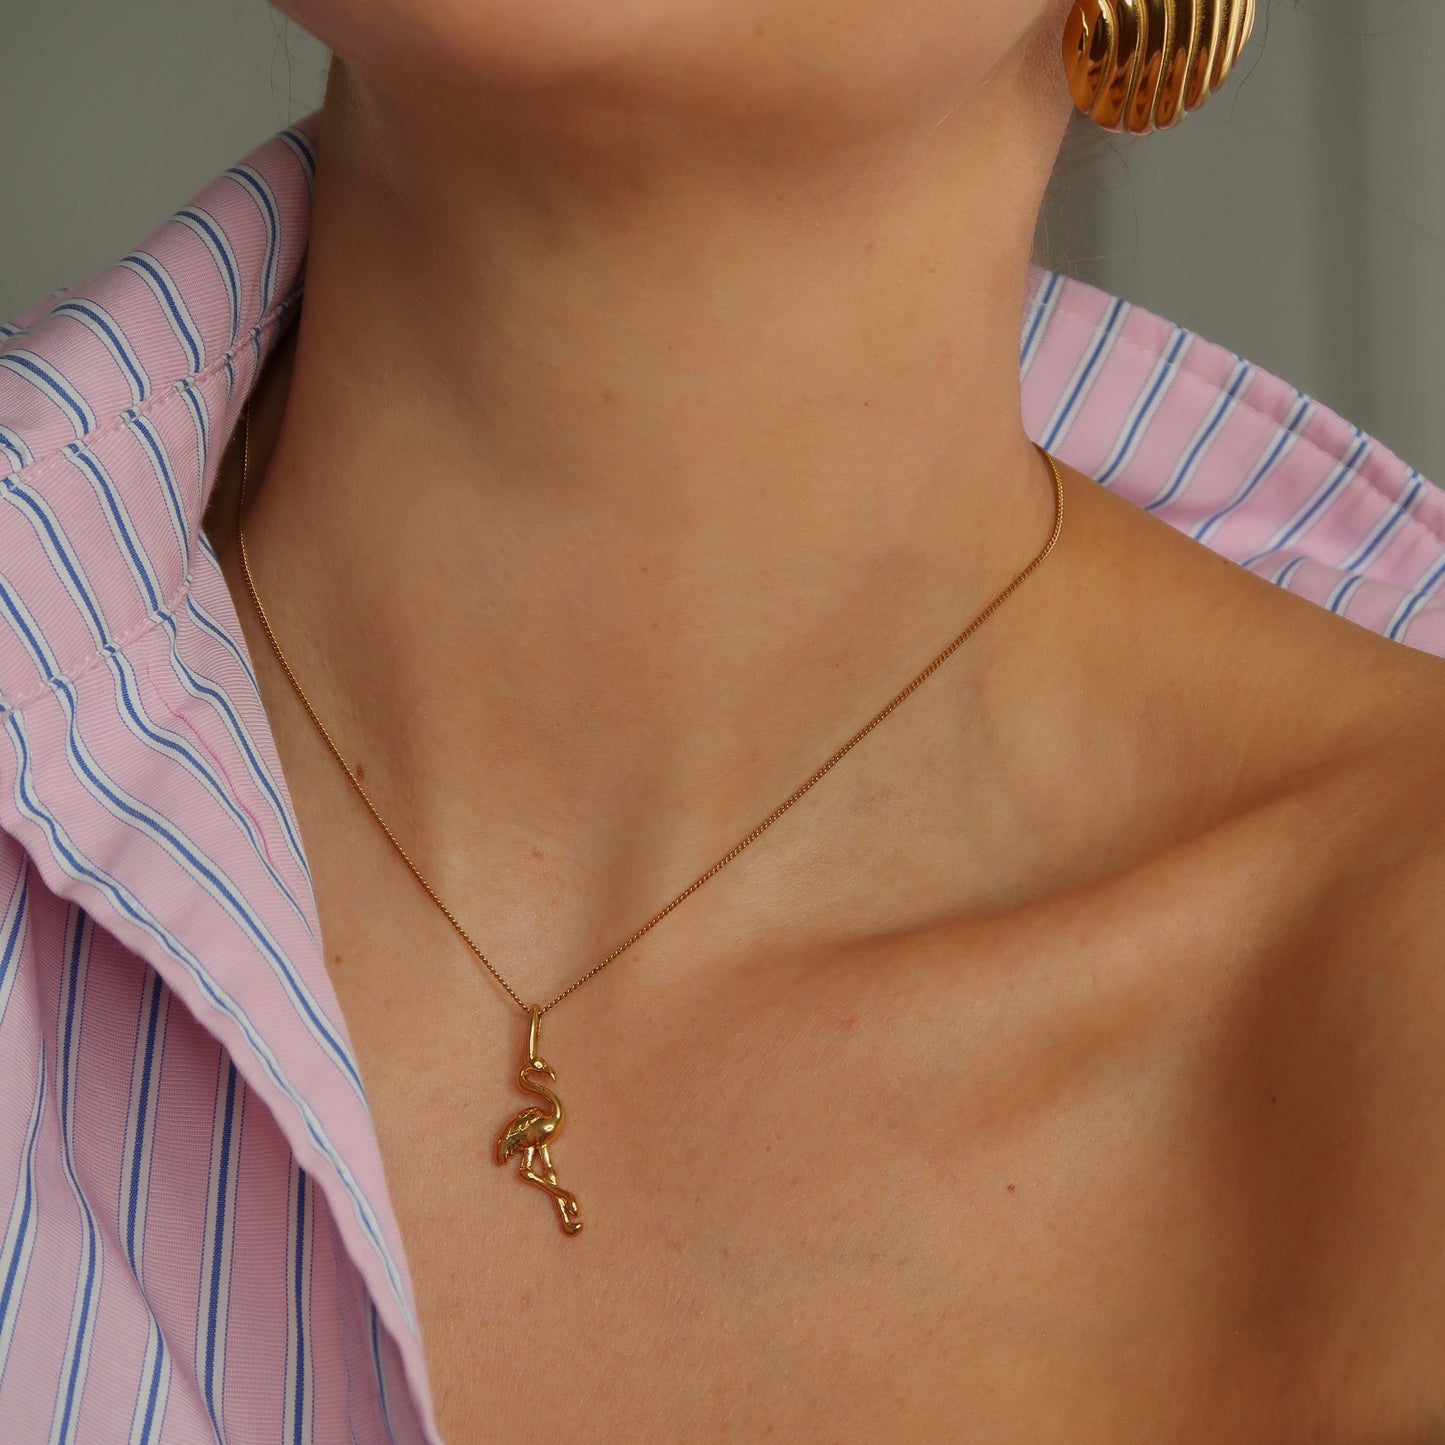 Flamingo Necklace - Gold - Namaste Jewelry Canada